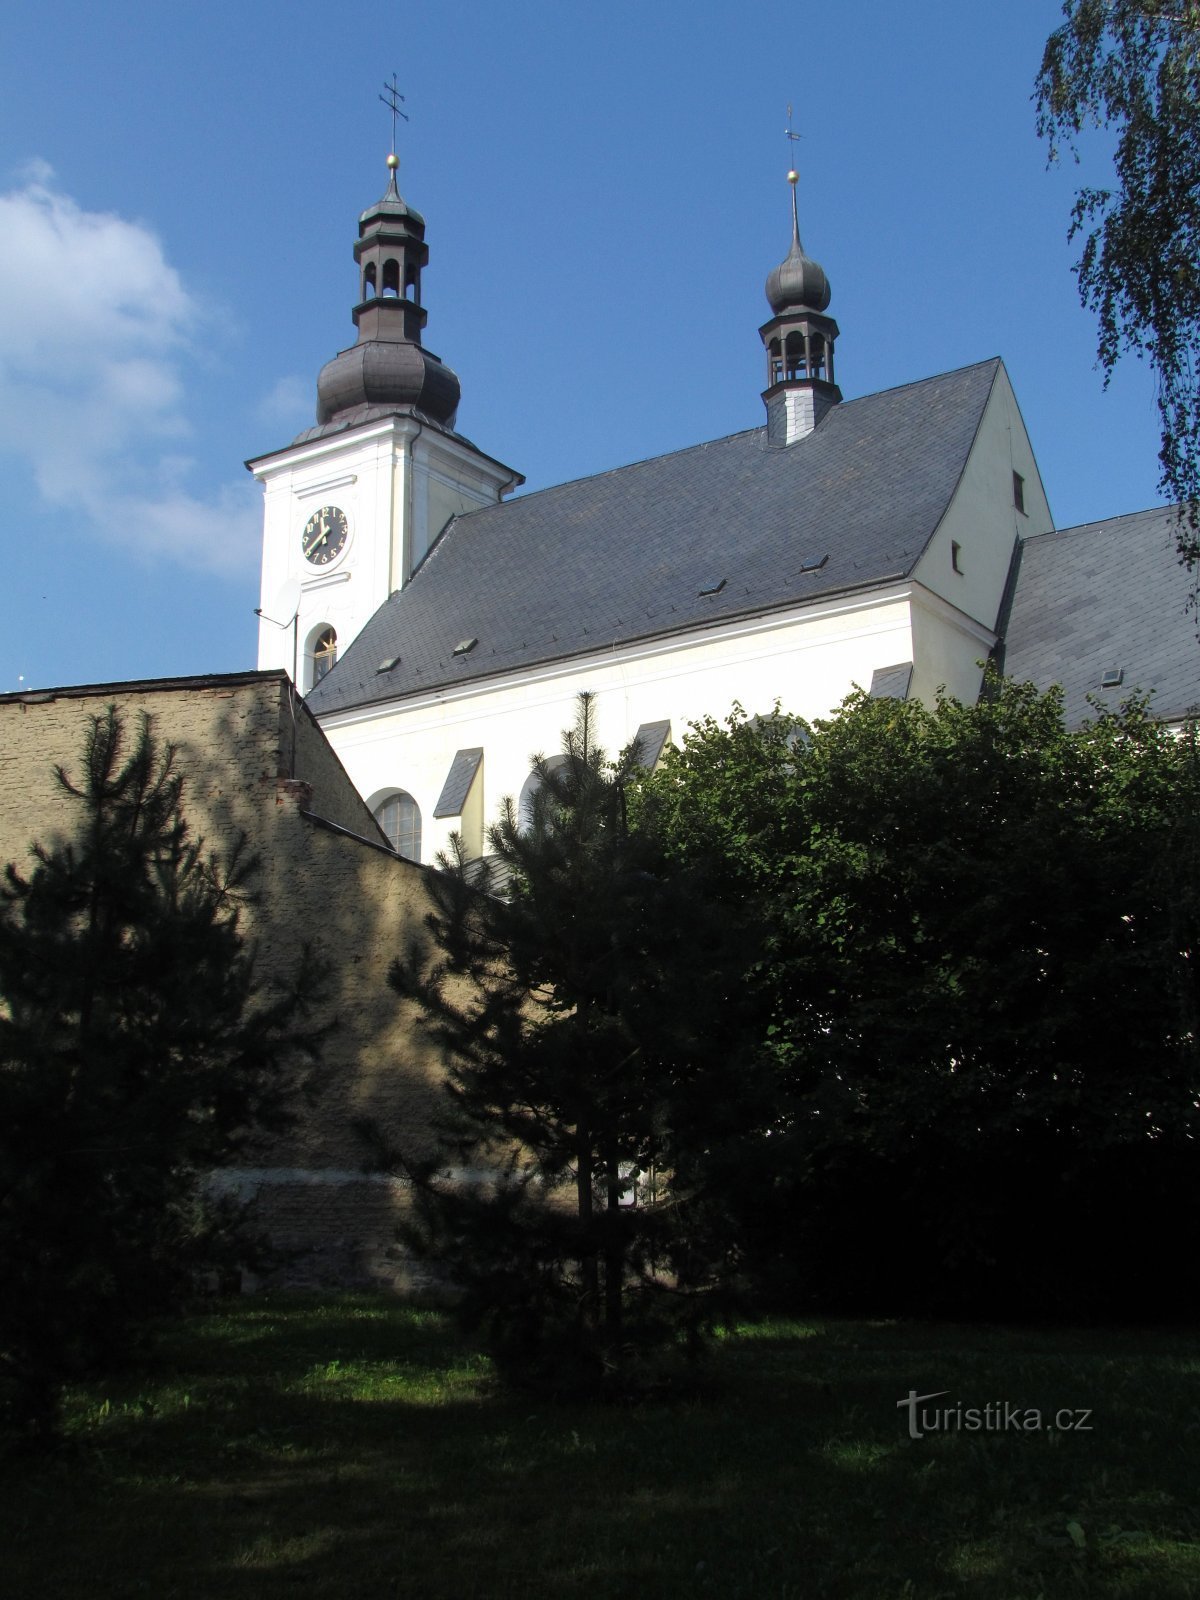 Odry - biserica Sf. Bartolomeu